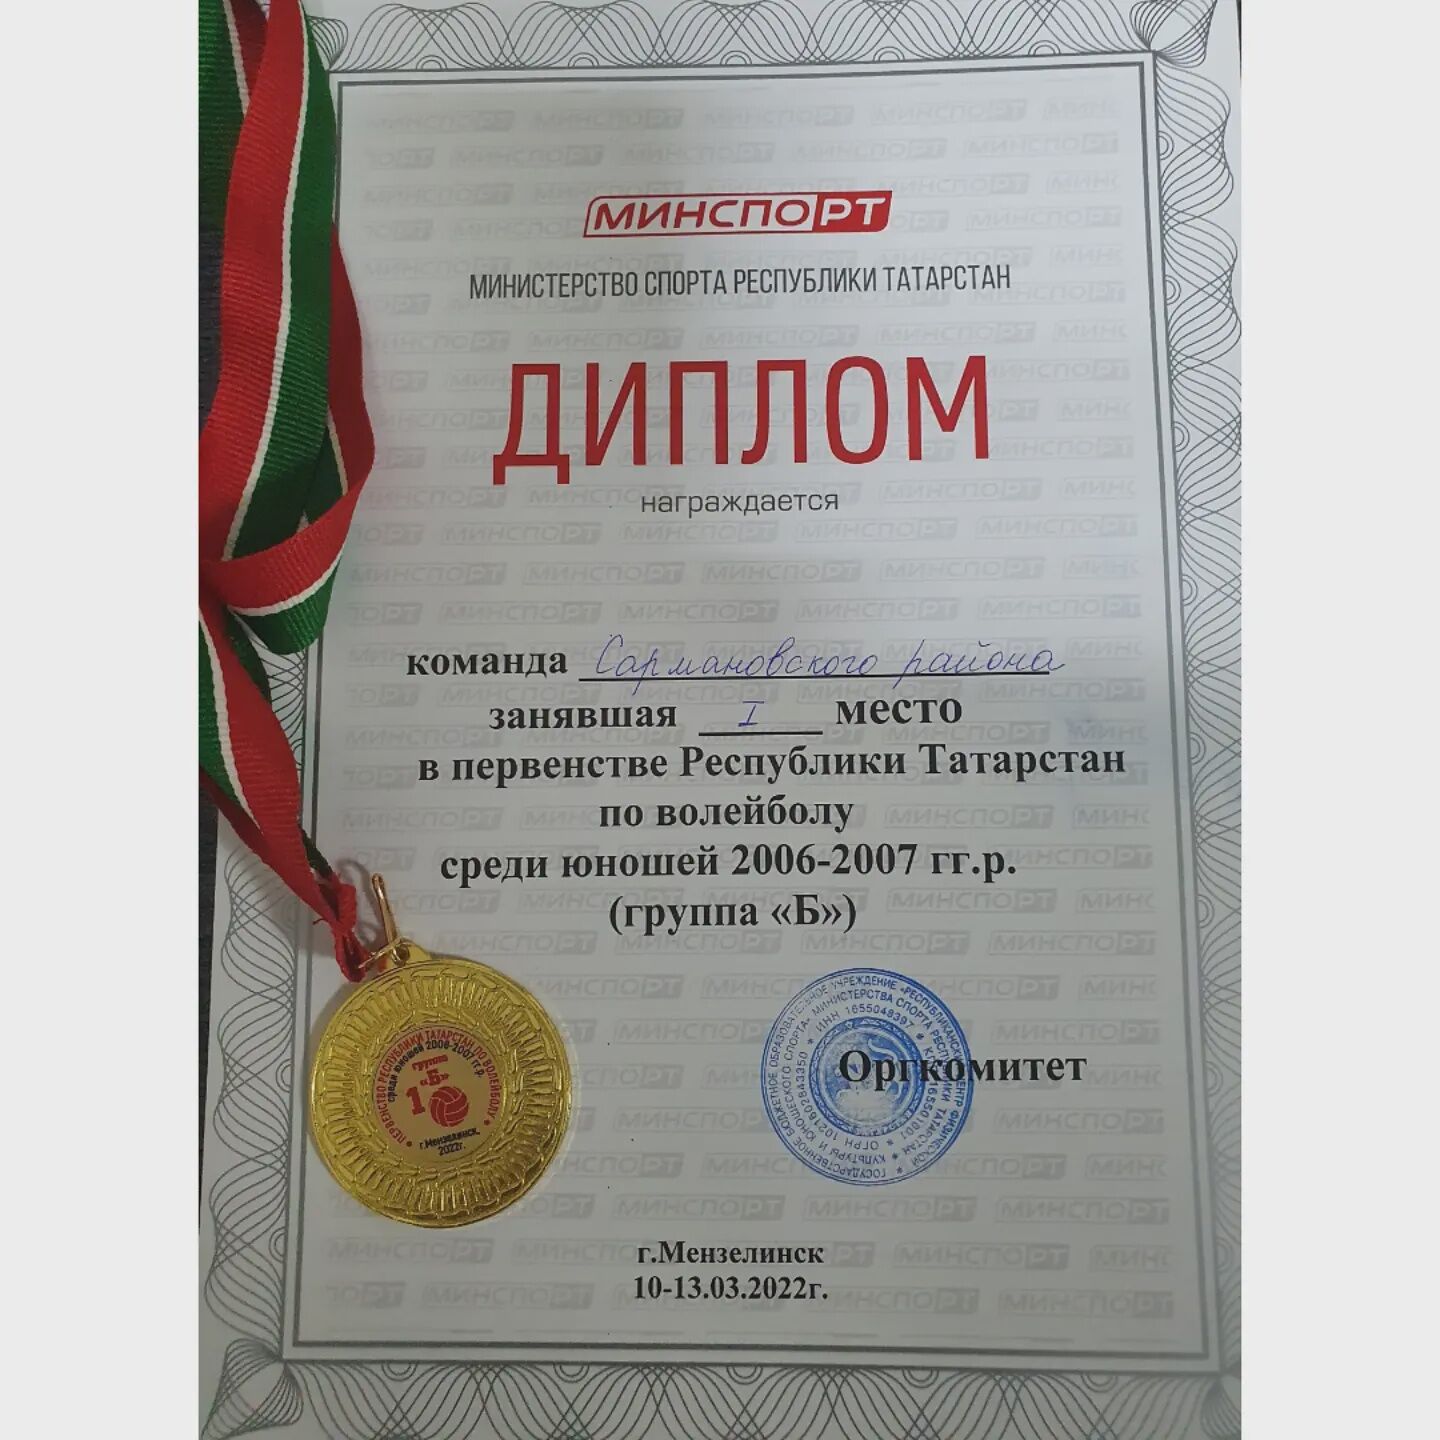 Сармановские волейболисты стали чемпионами Первенства РТ